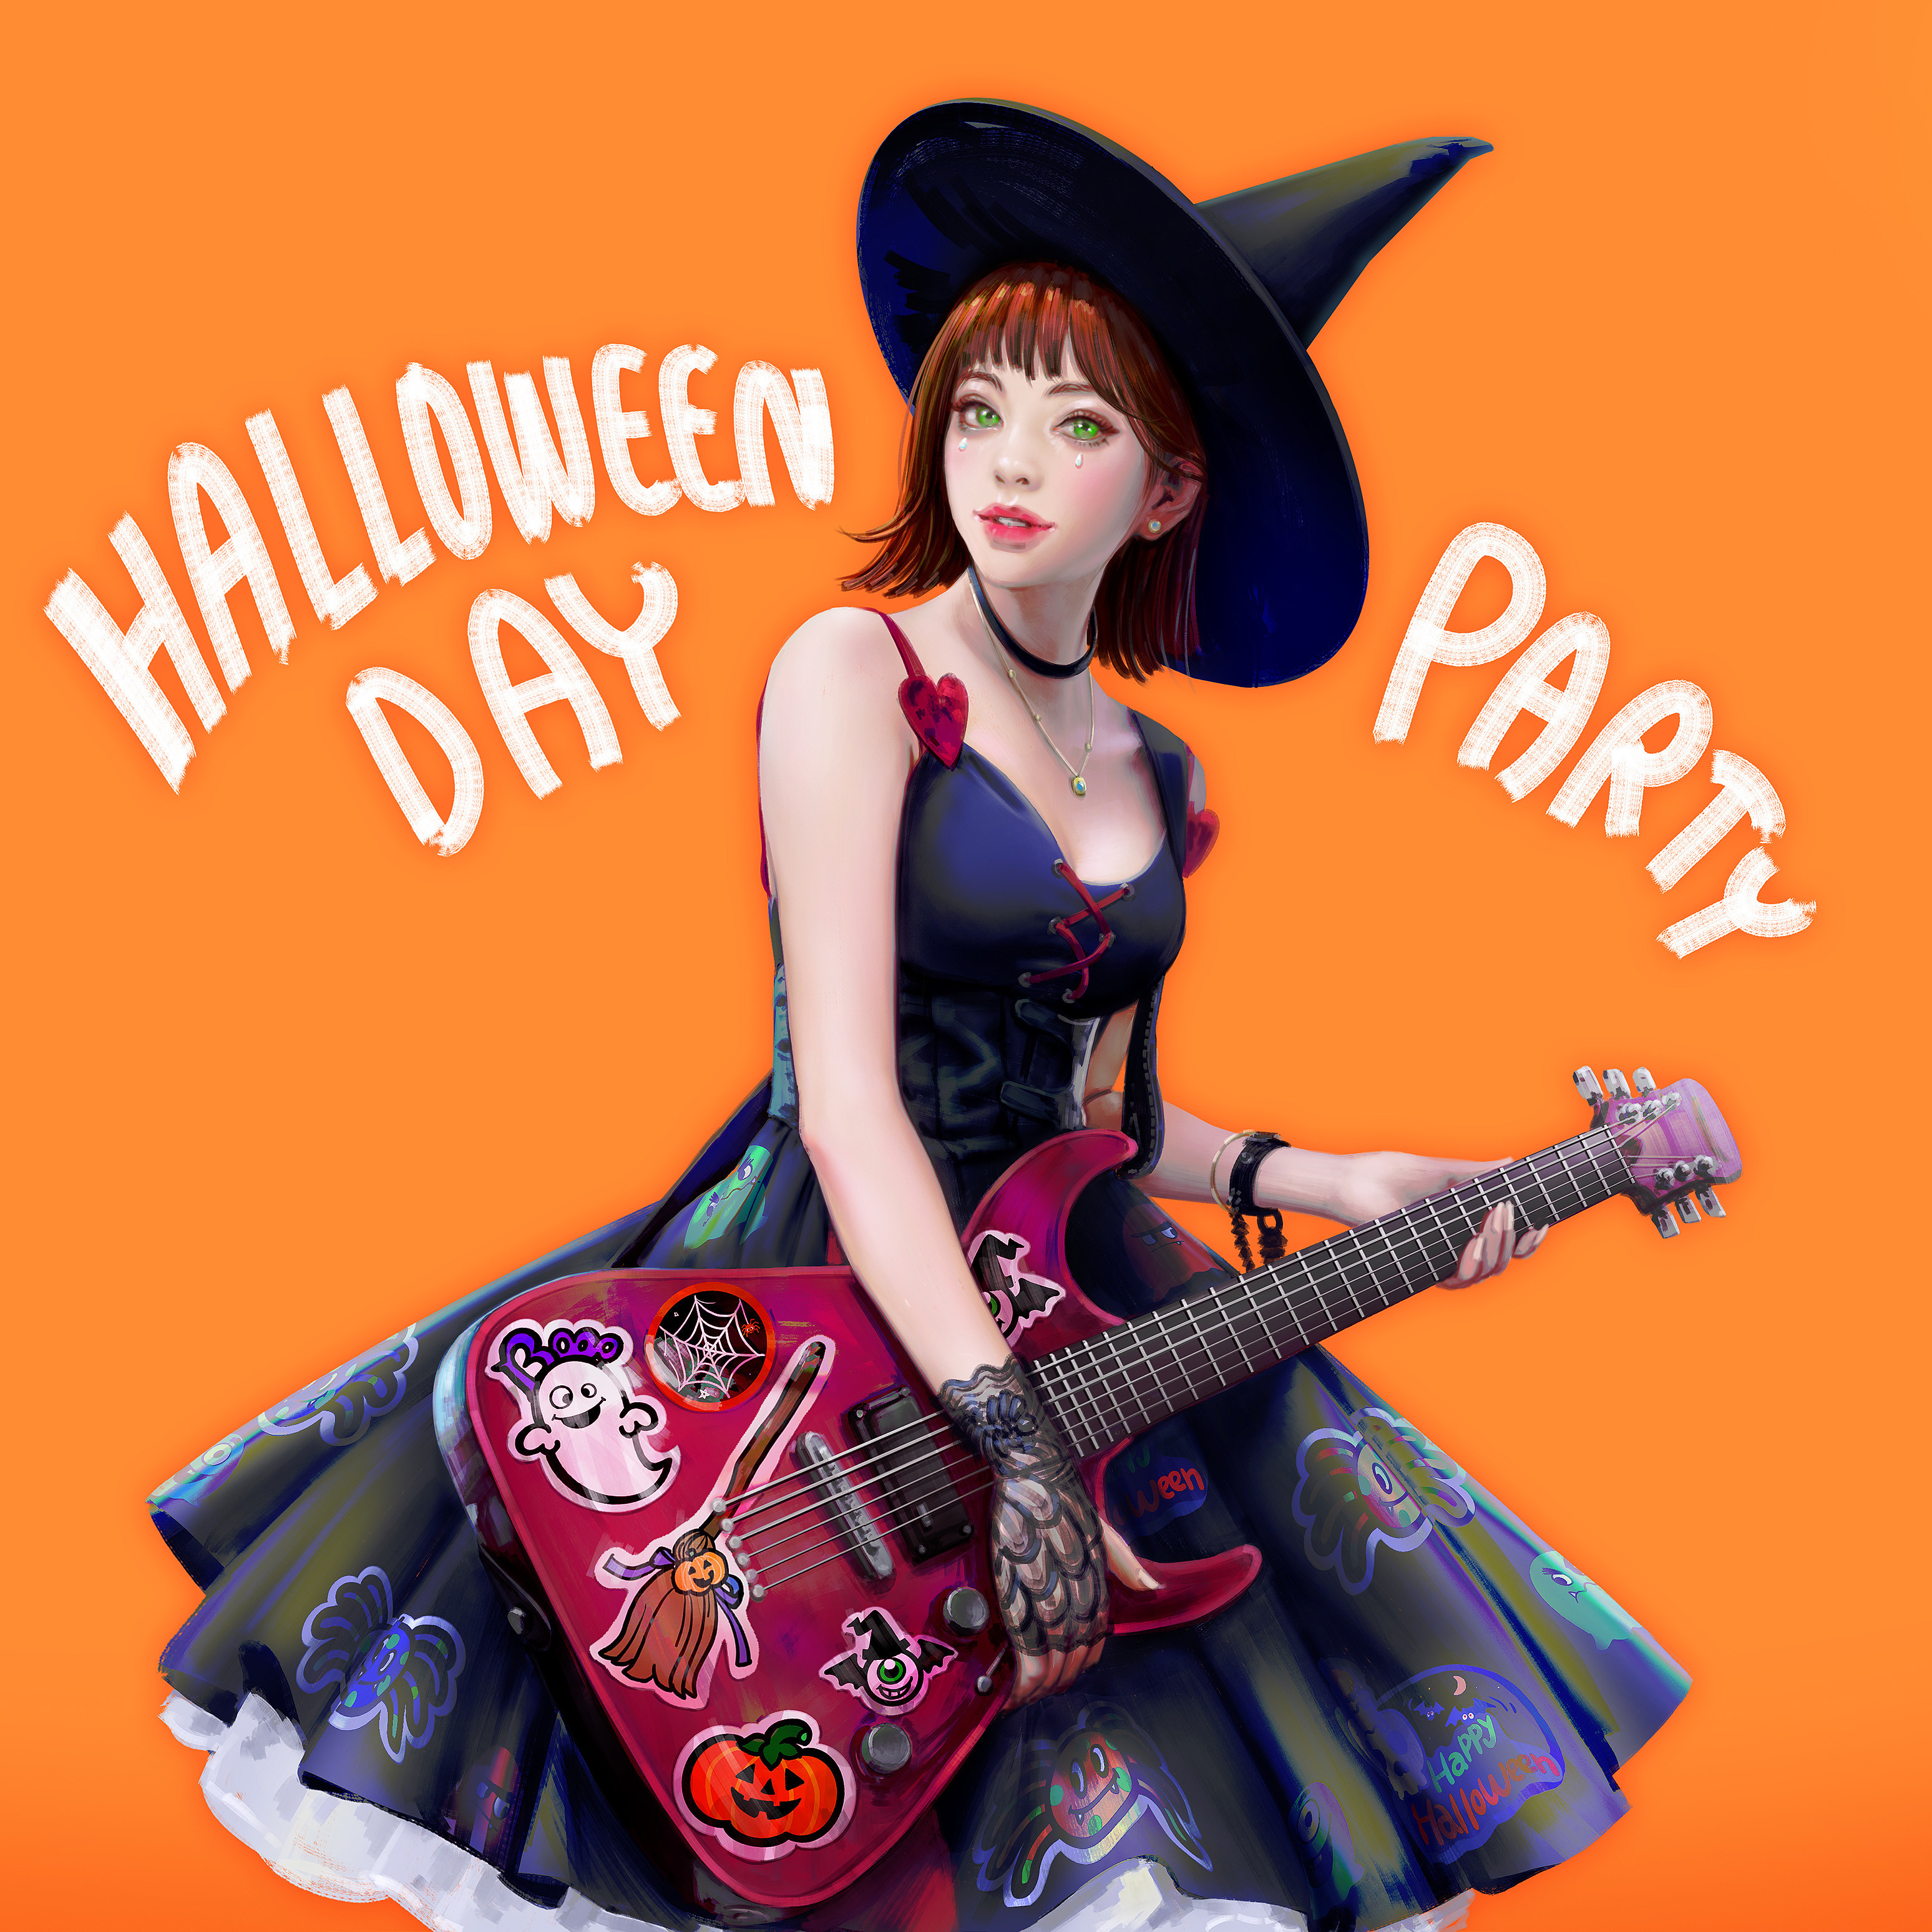 ArtStation Green Eyes Hat Guitar Artwork Stickers Witch Hat Dress Orange Background Halloween LightB 3096x3096